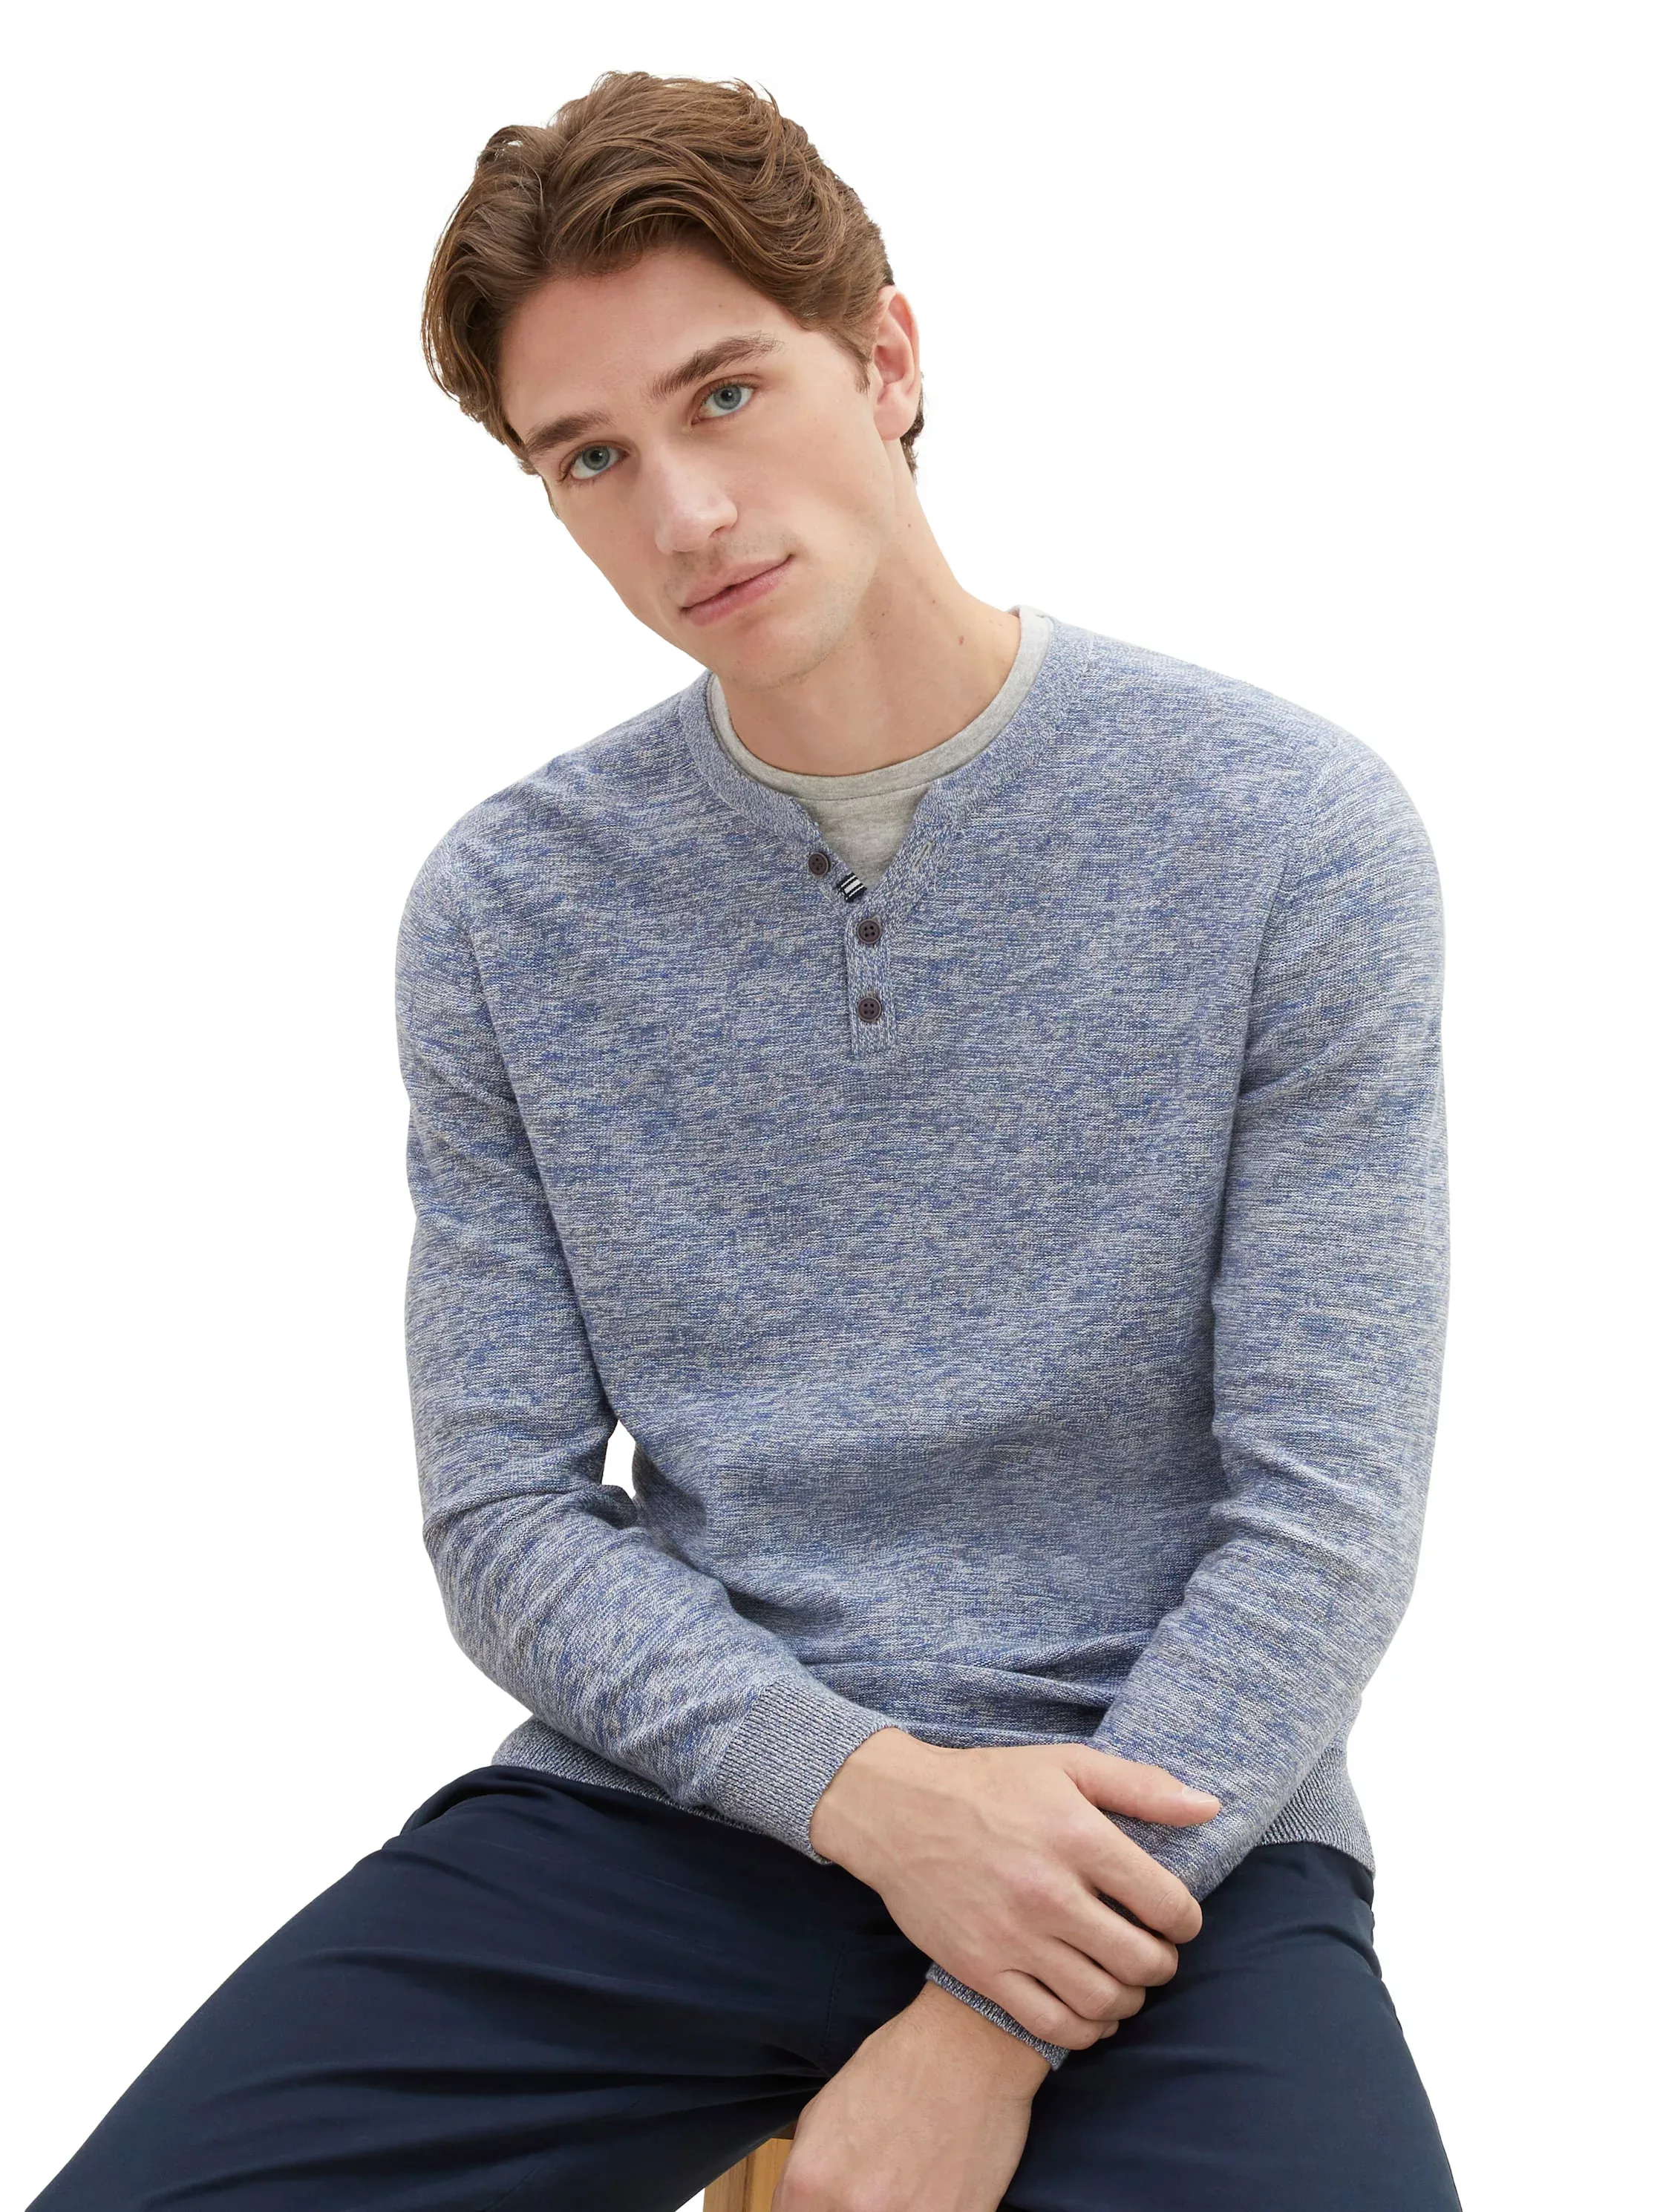 TOM TAILOR 2-in-1-Pullover im 2-in-1-Stil günstig online kaufen